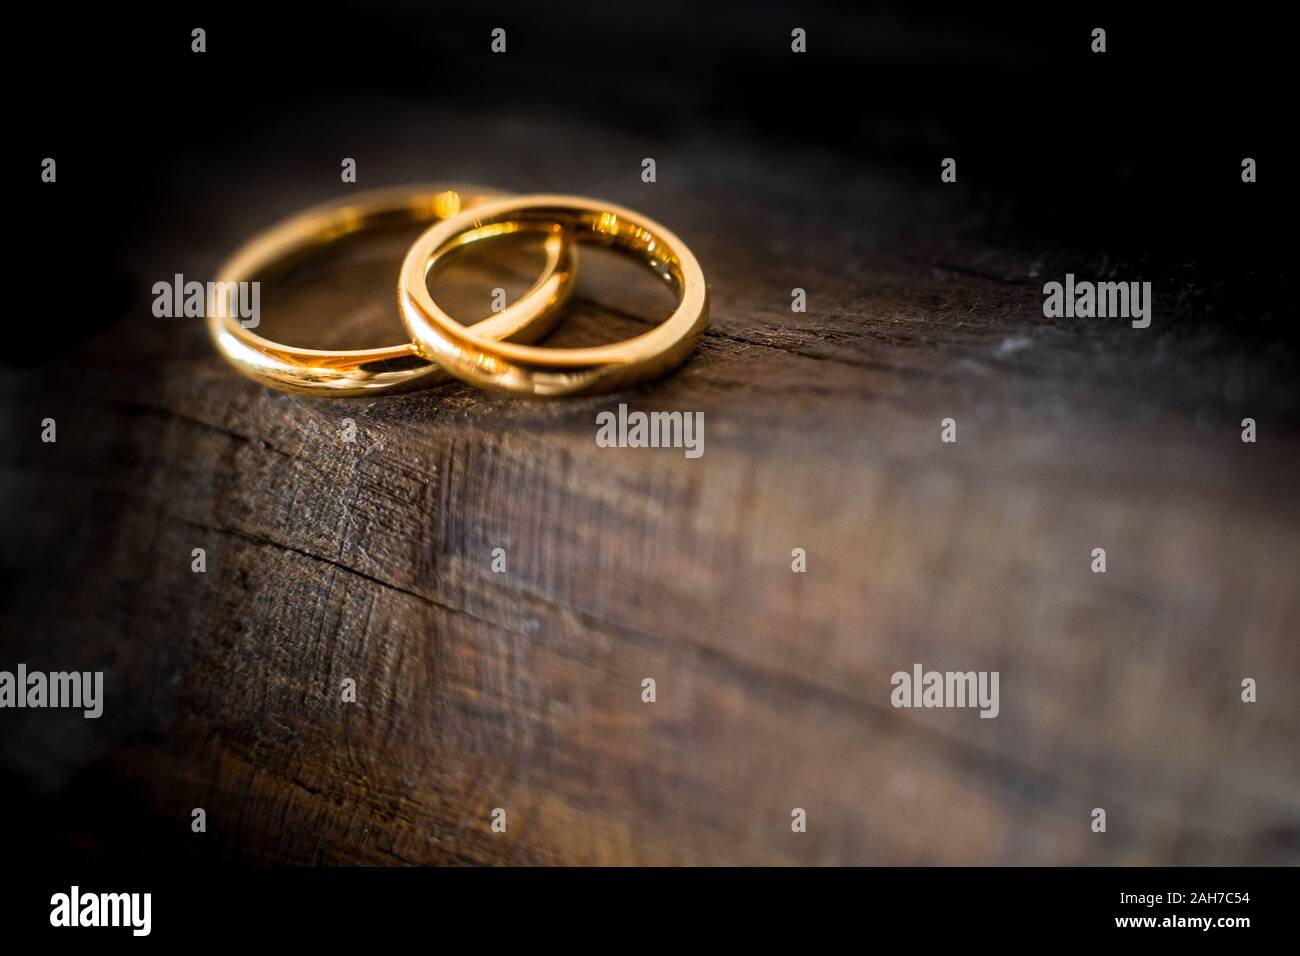 Primer plano de dos anillos de bodas de oro que yacen en el borde de una antigua y erosionada mesa de madera Foto de stock